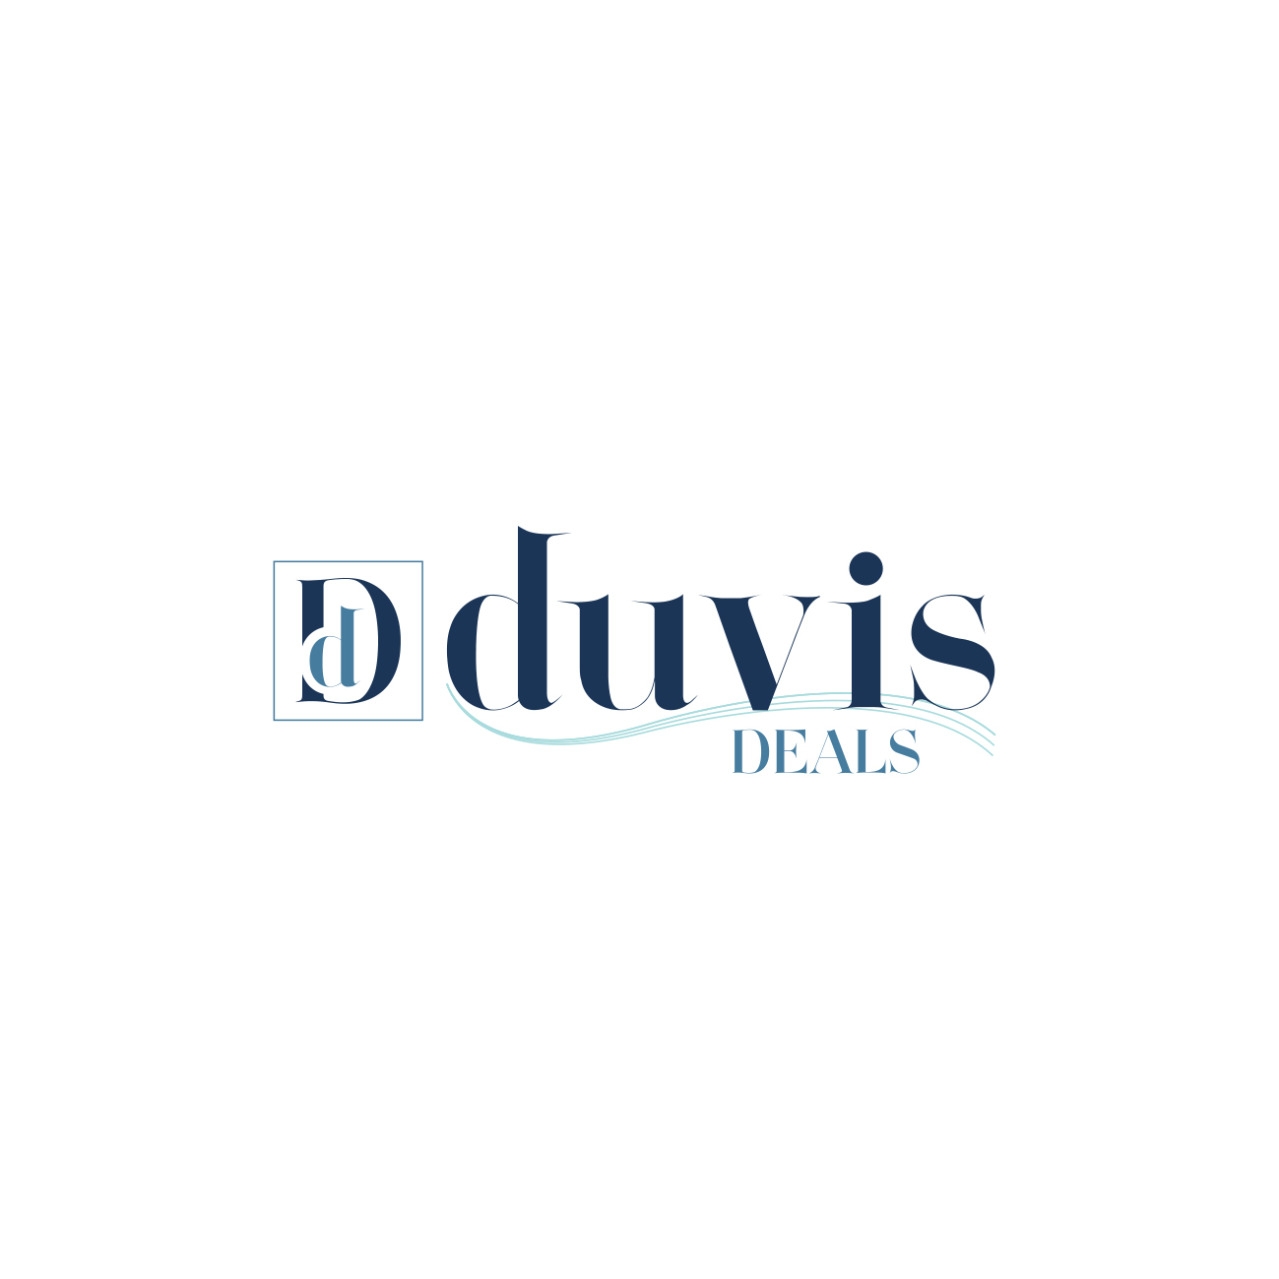 Duvis Deals